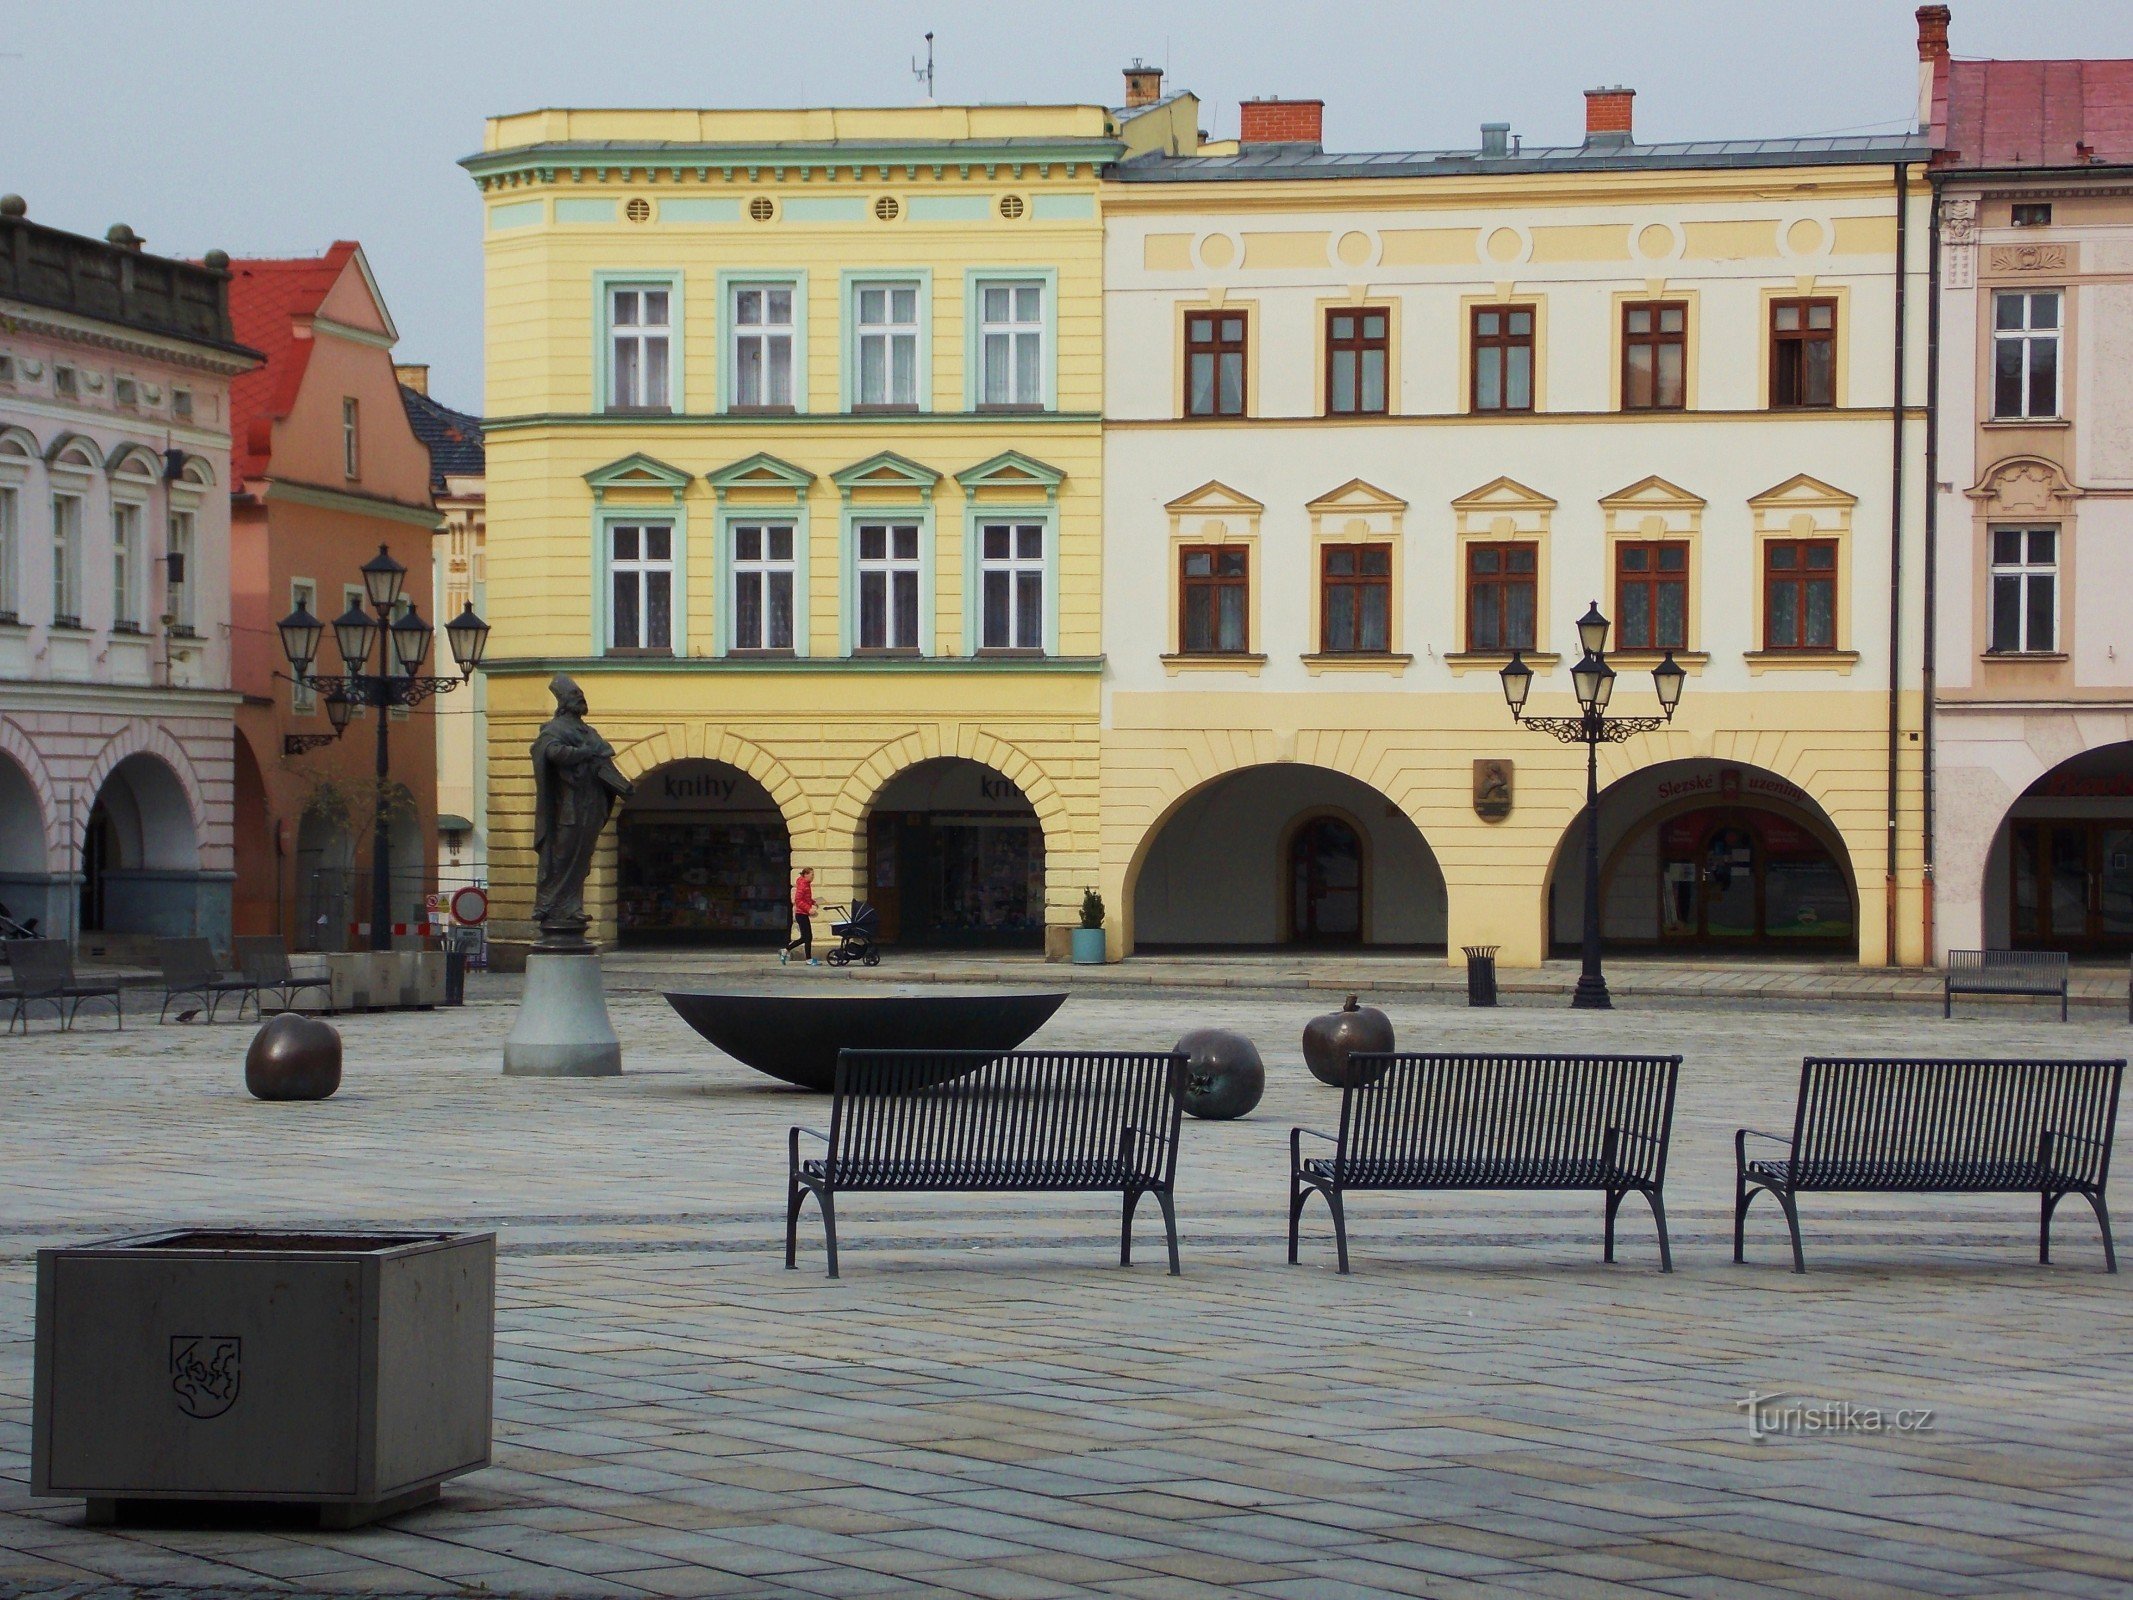 Quảng trường Masaryk - trung tâm lịch sử ở Nové Jičín